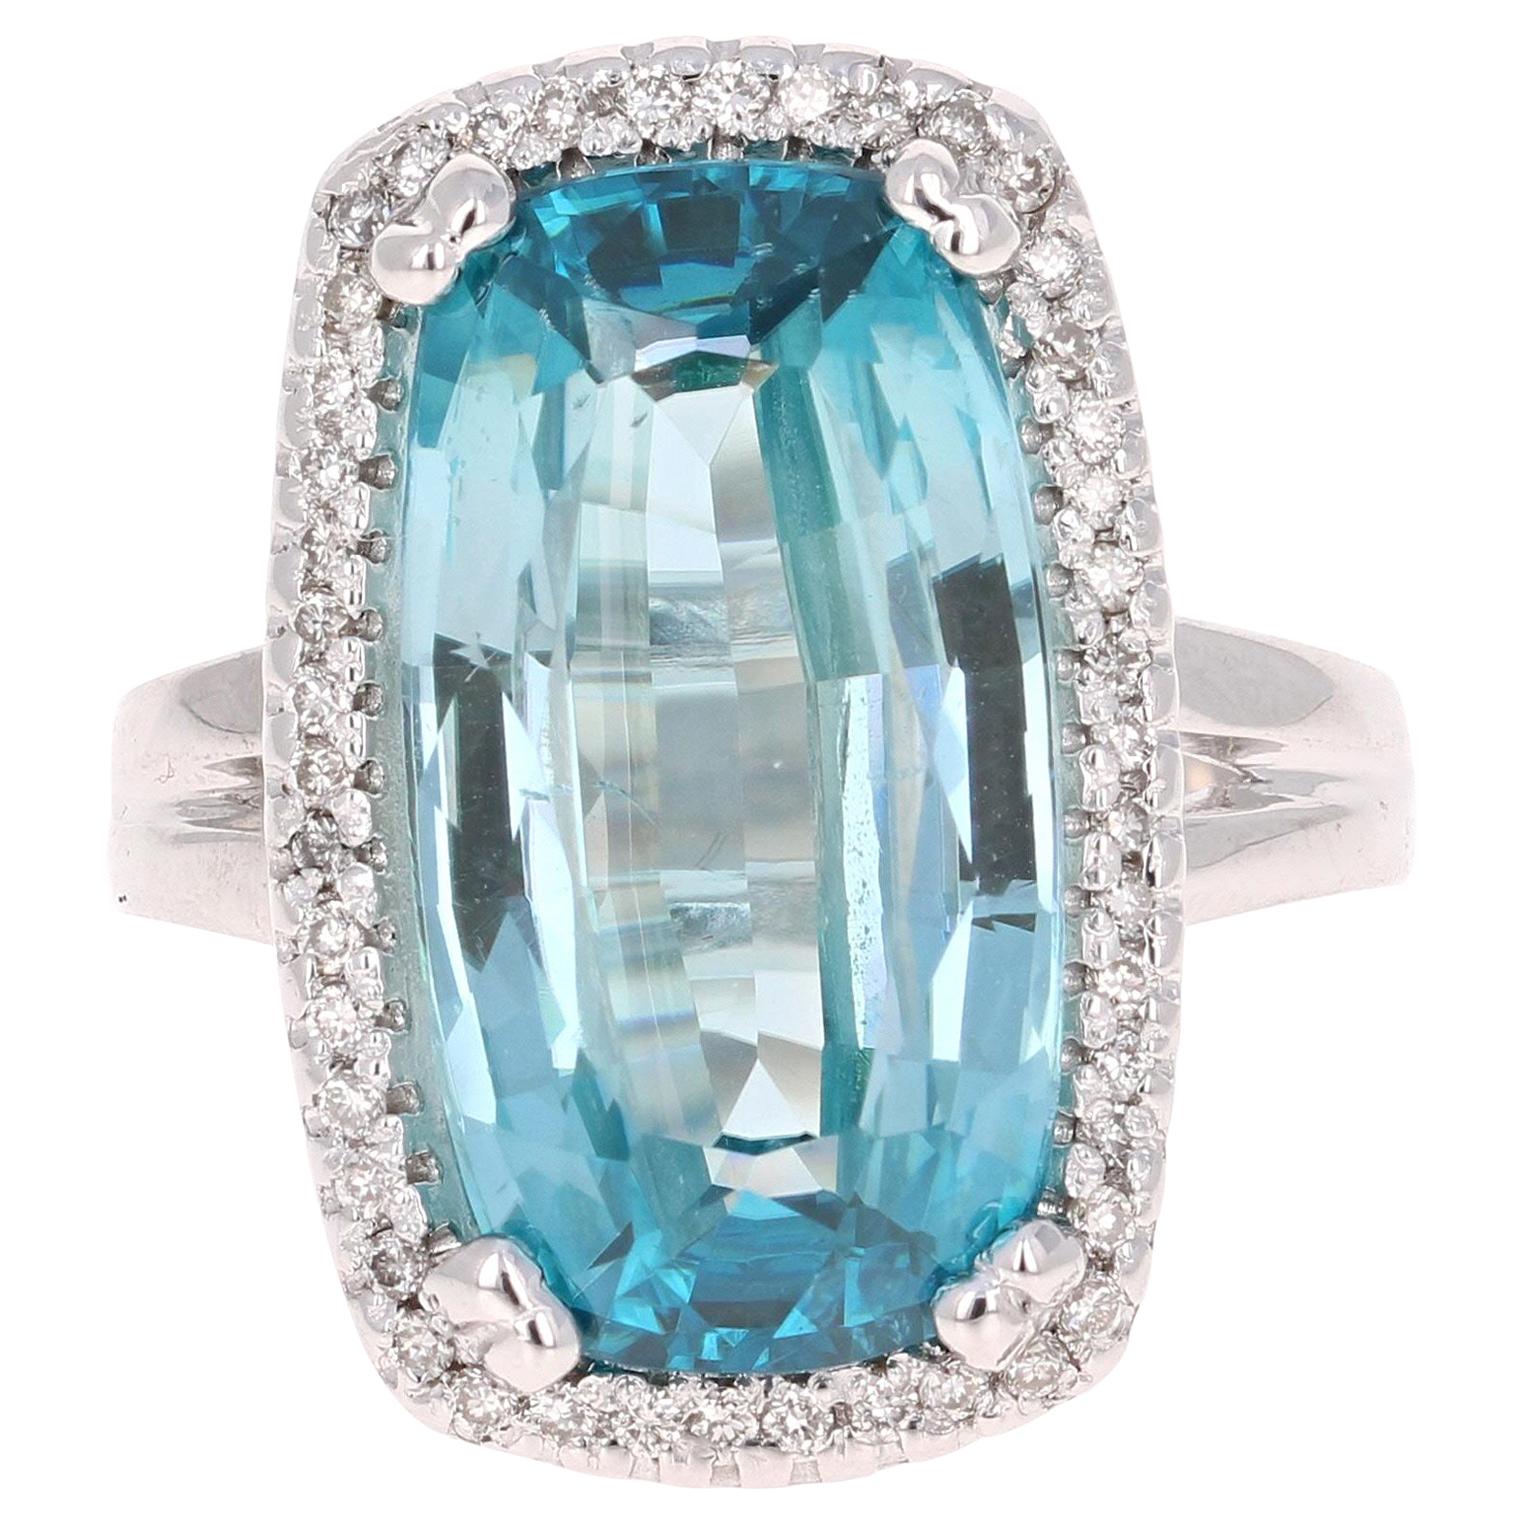 12.55 Carat Blue Zircon Diamond White Gold Ring 18 Karat White Gold Ring